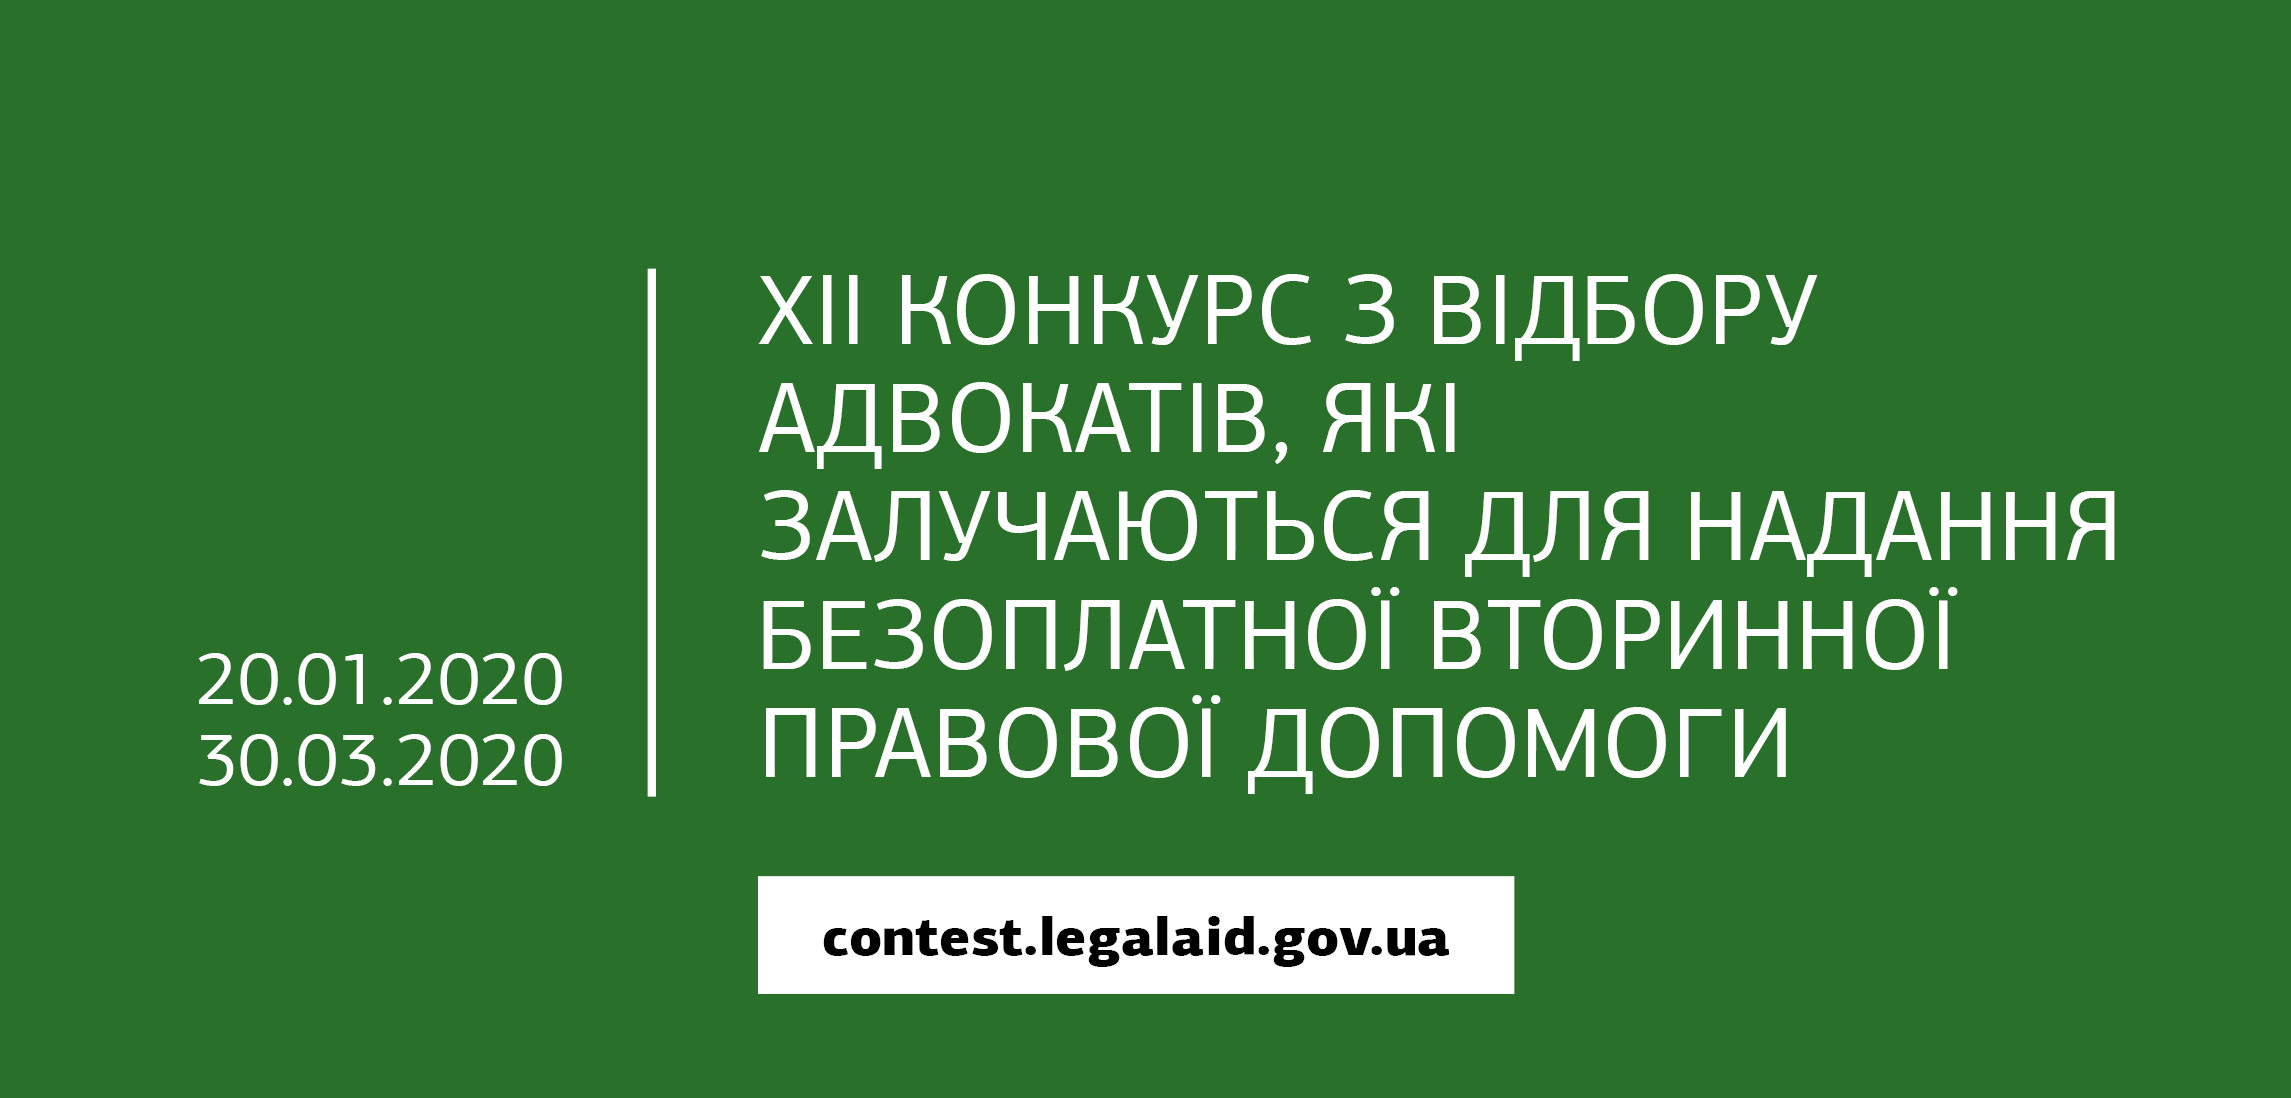 Оголошено XII конкурс з відбору адвокатів, які залучаються для надання безоплатної вторинної правової допомоги